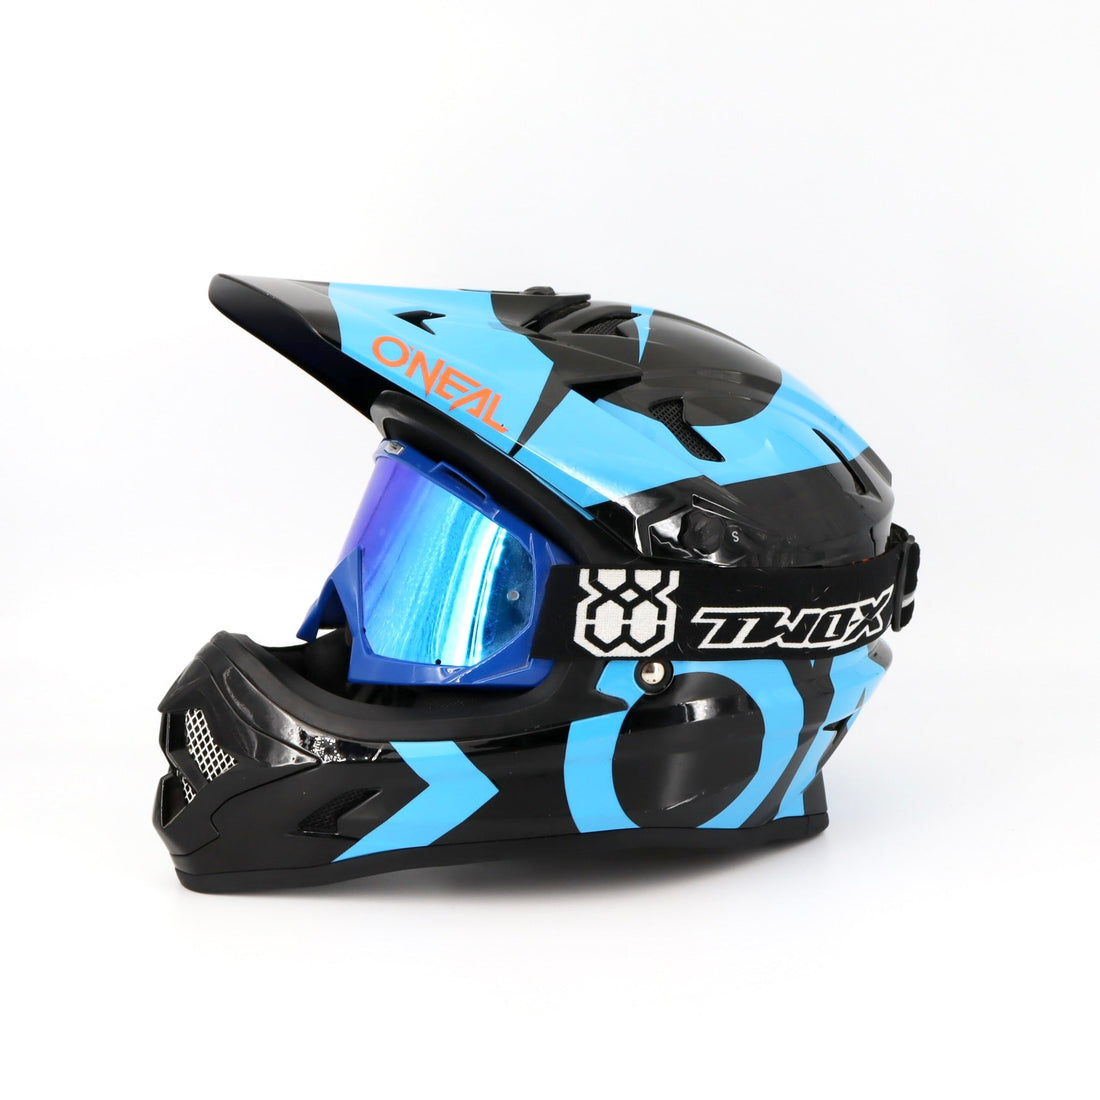 Mountainbike-Helm - Oneal - Ski - blau/schwarz - sehr guter Zustand